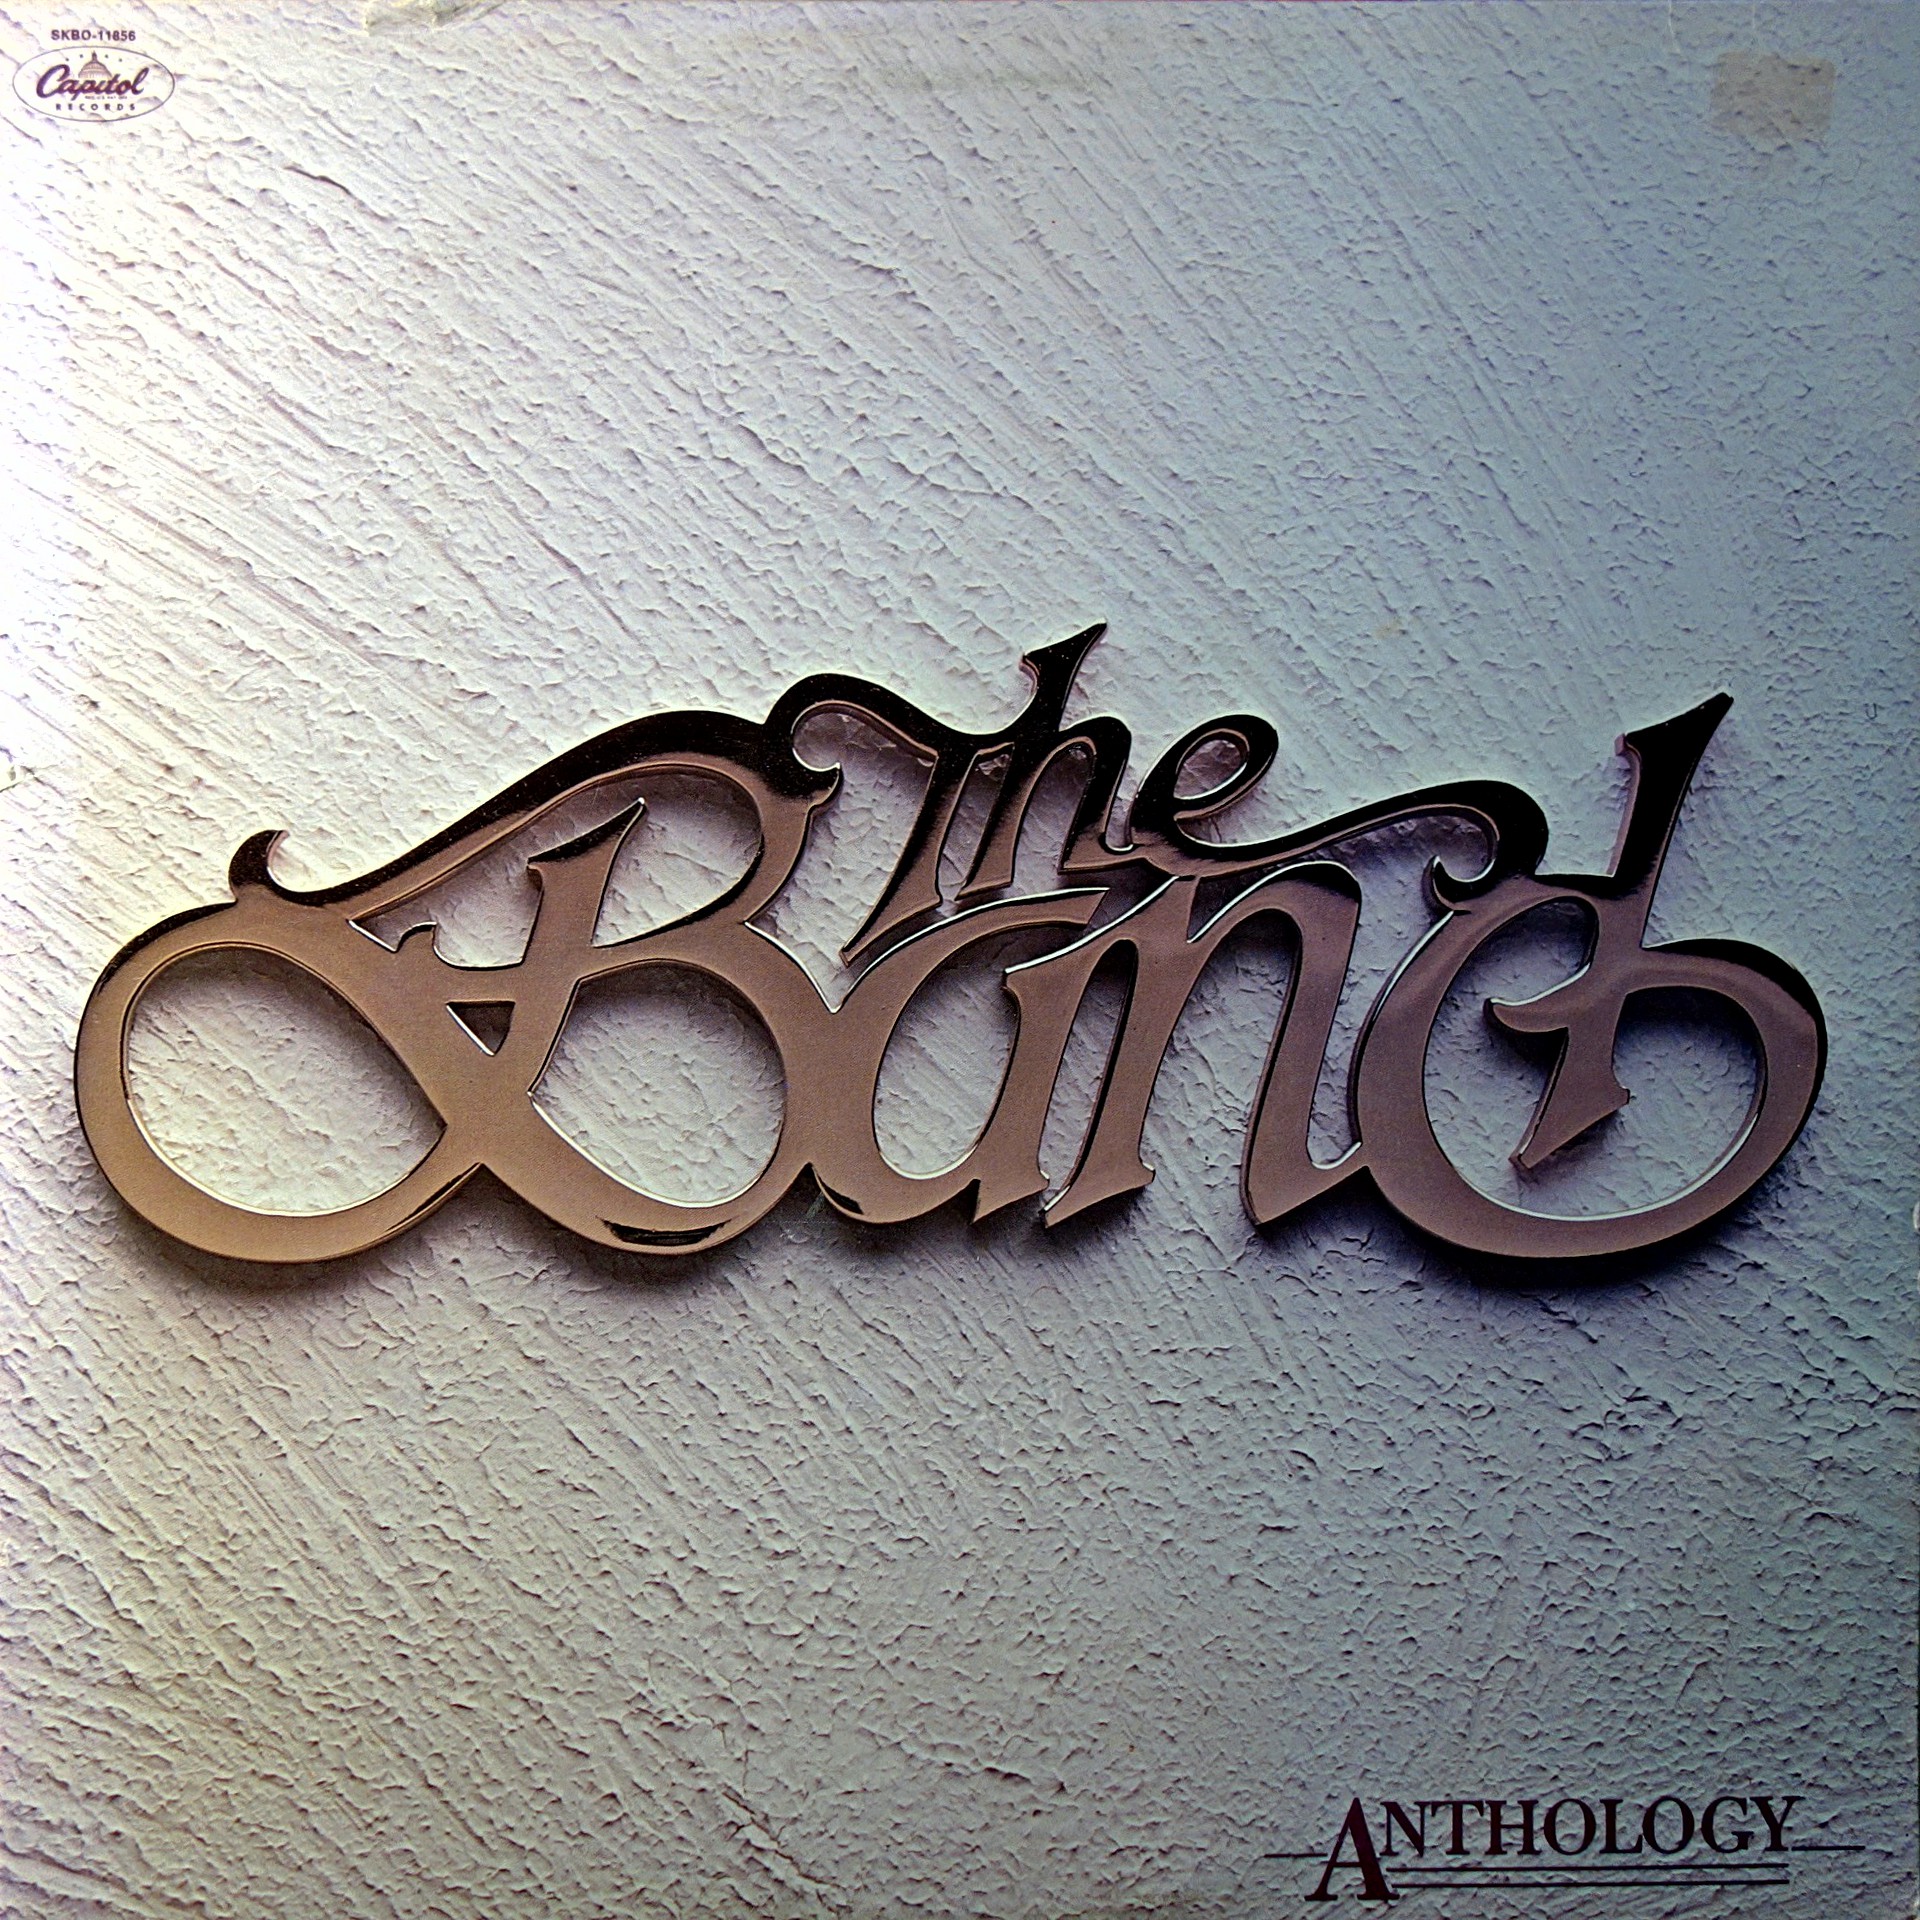 2xLP The Band ‎– Anthology